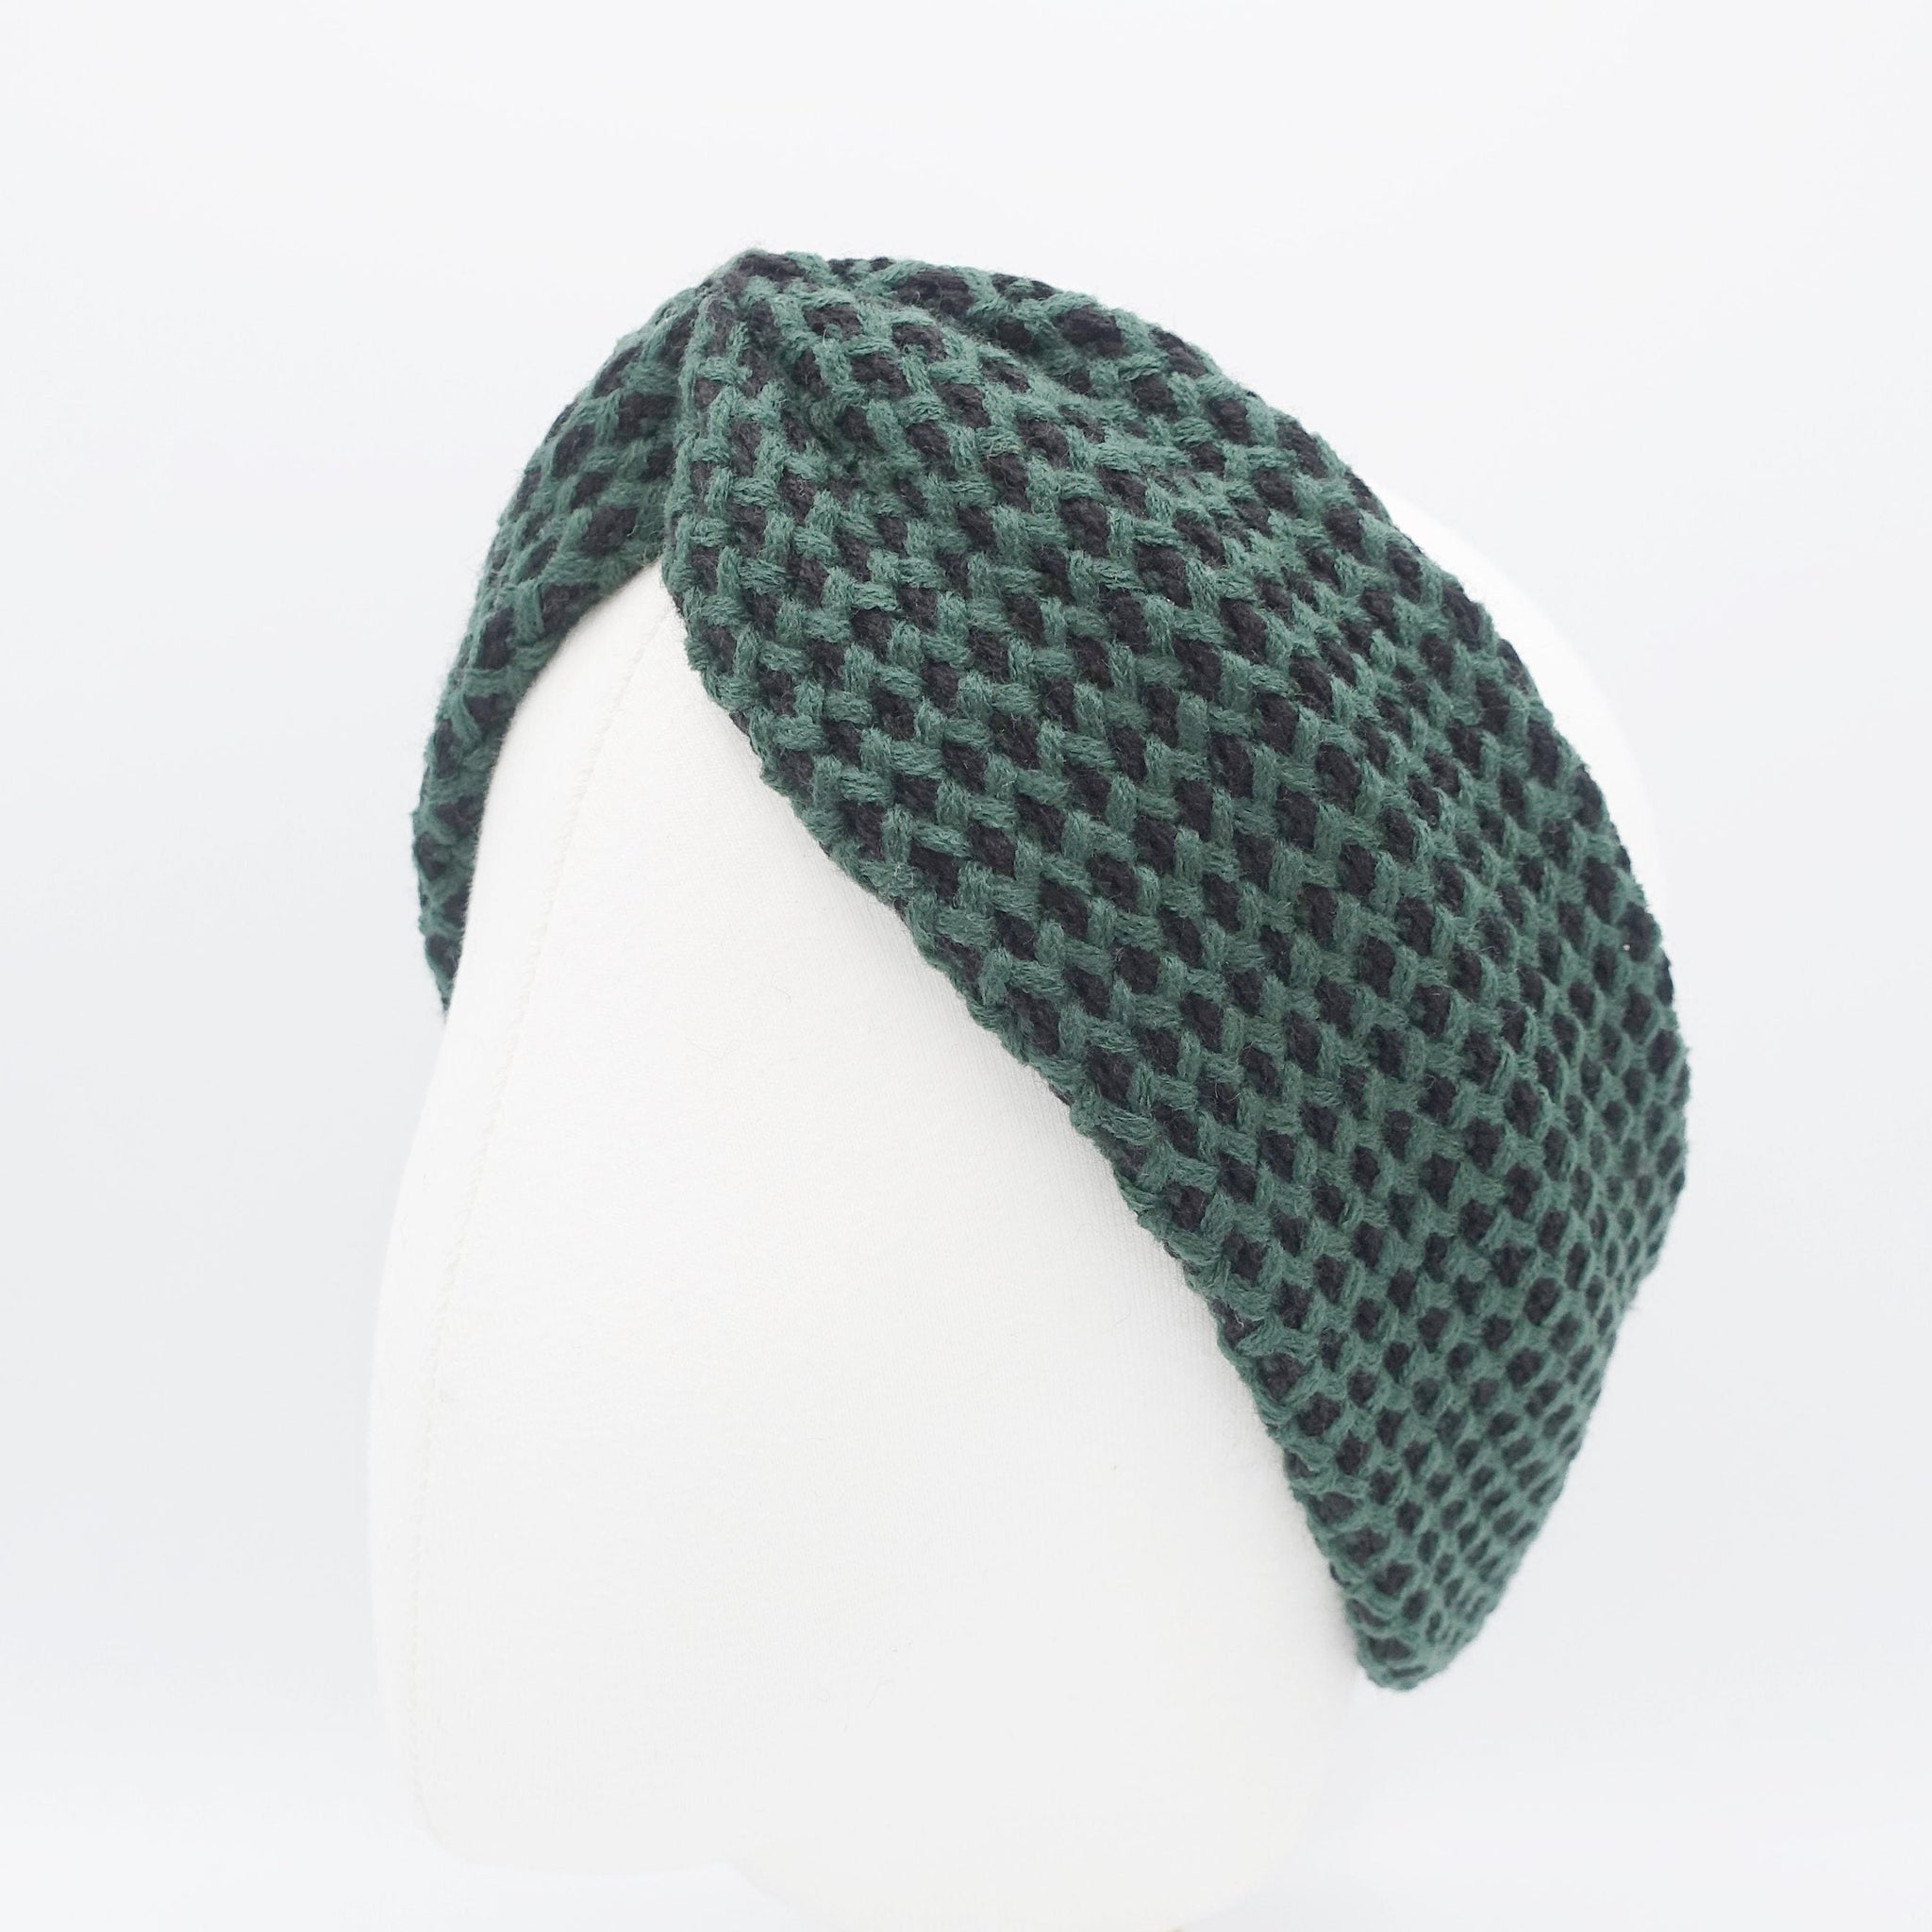 veryshine.com Headband Green waffle knit headband two way turban hair accessory Fall Winter hair accessory for women